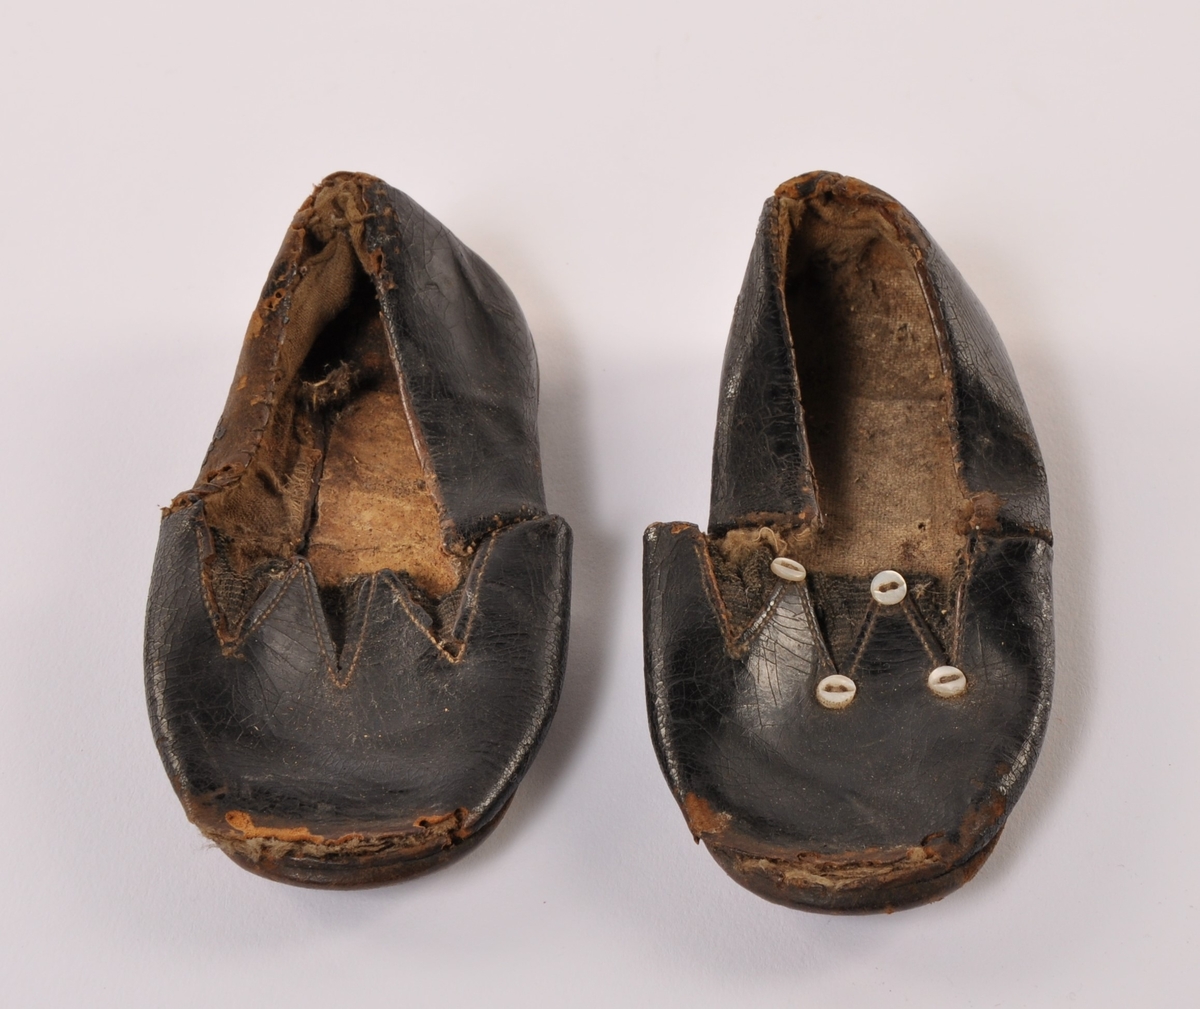 Et par barnesko i sort skinn med lærsåle, med strikk over vrist. Ene skoen har 4 stk pynteknapper i perlemor, mangler på den andre.